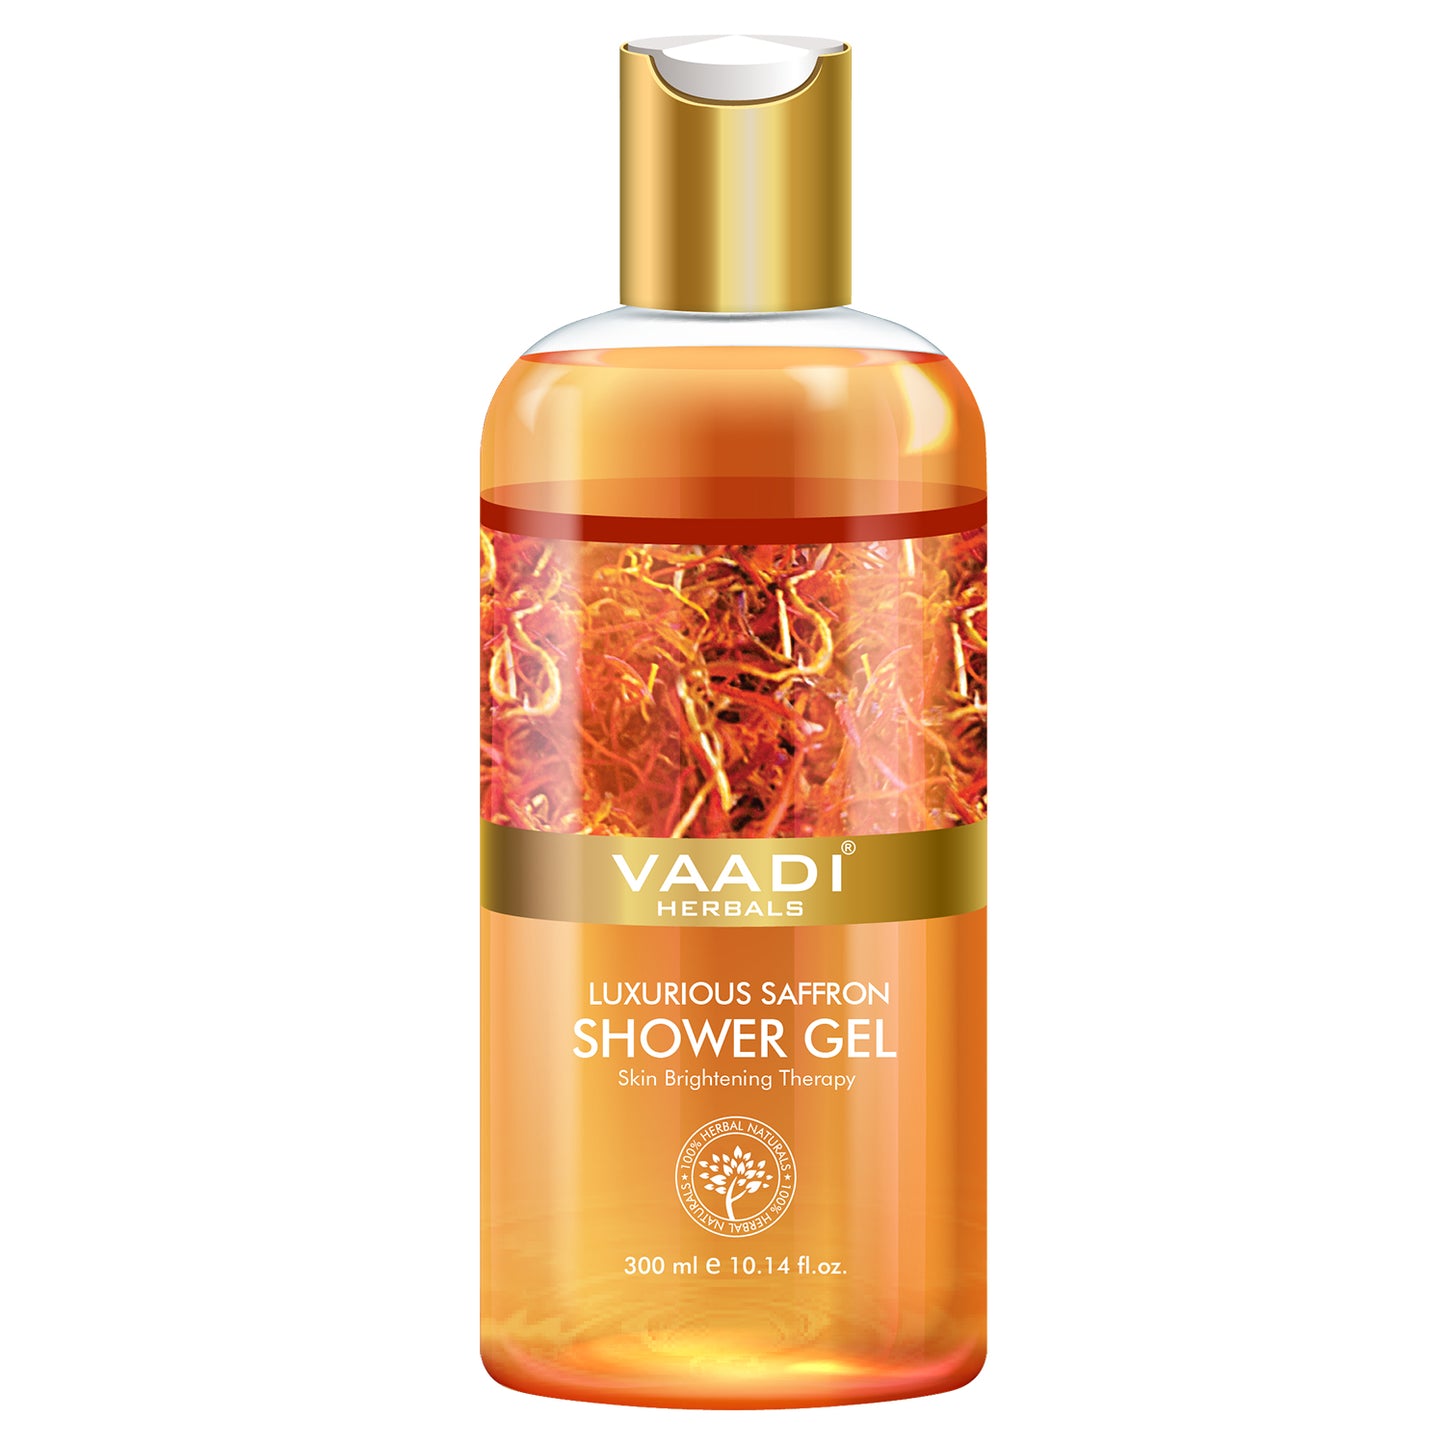 Luxurious Organic Saffron Shower Gel - Skin Brightening Therapy - Reduces Pigmentation Marks (300 ml / 10.2 fl oz)